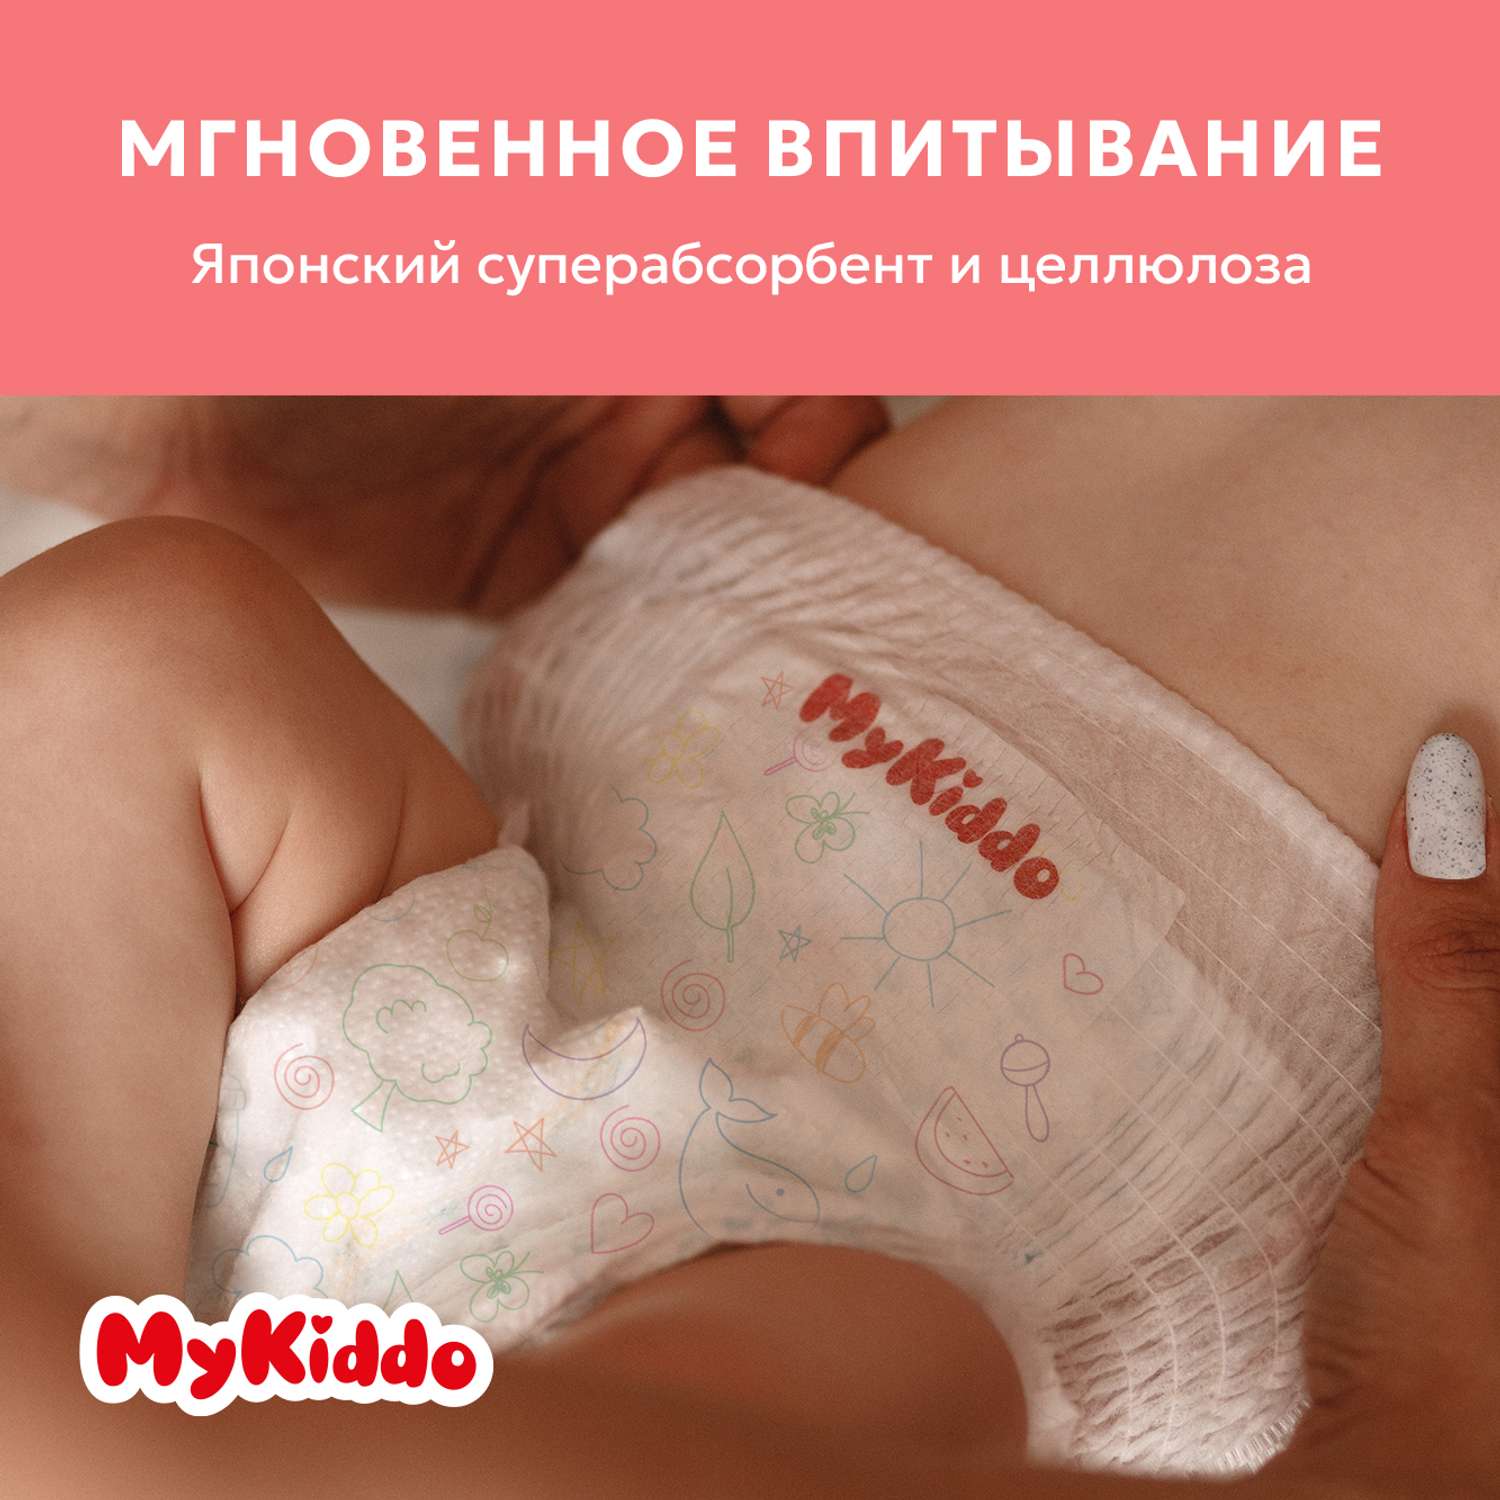 Подгузники MyKiddo Premium для новорожденных 0-6 кг размер S 3уп по 24 шт - фото 3